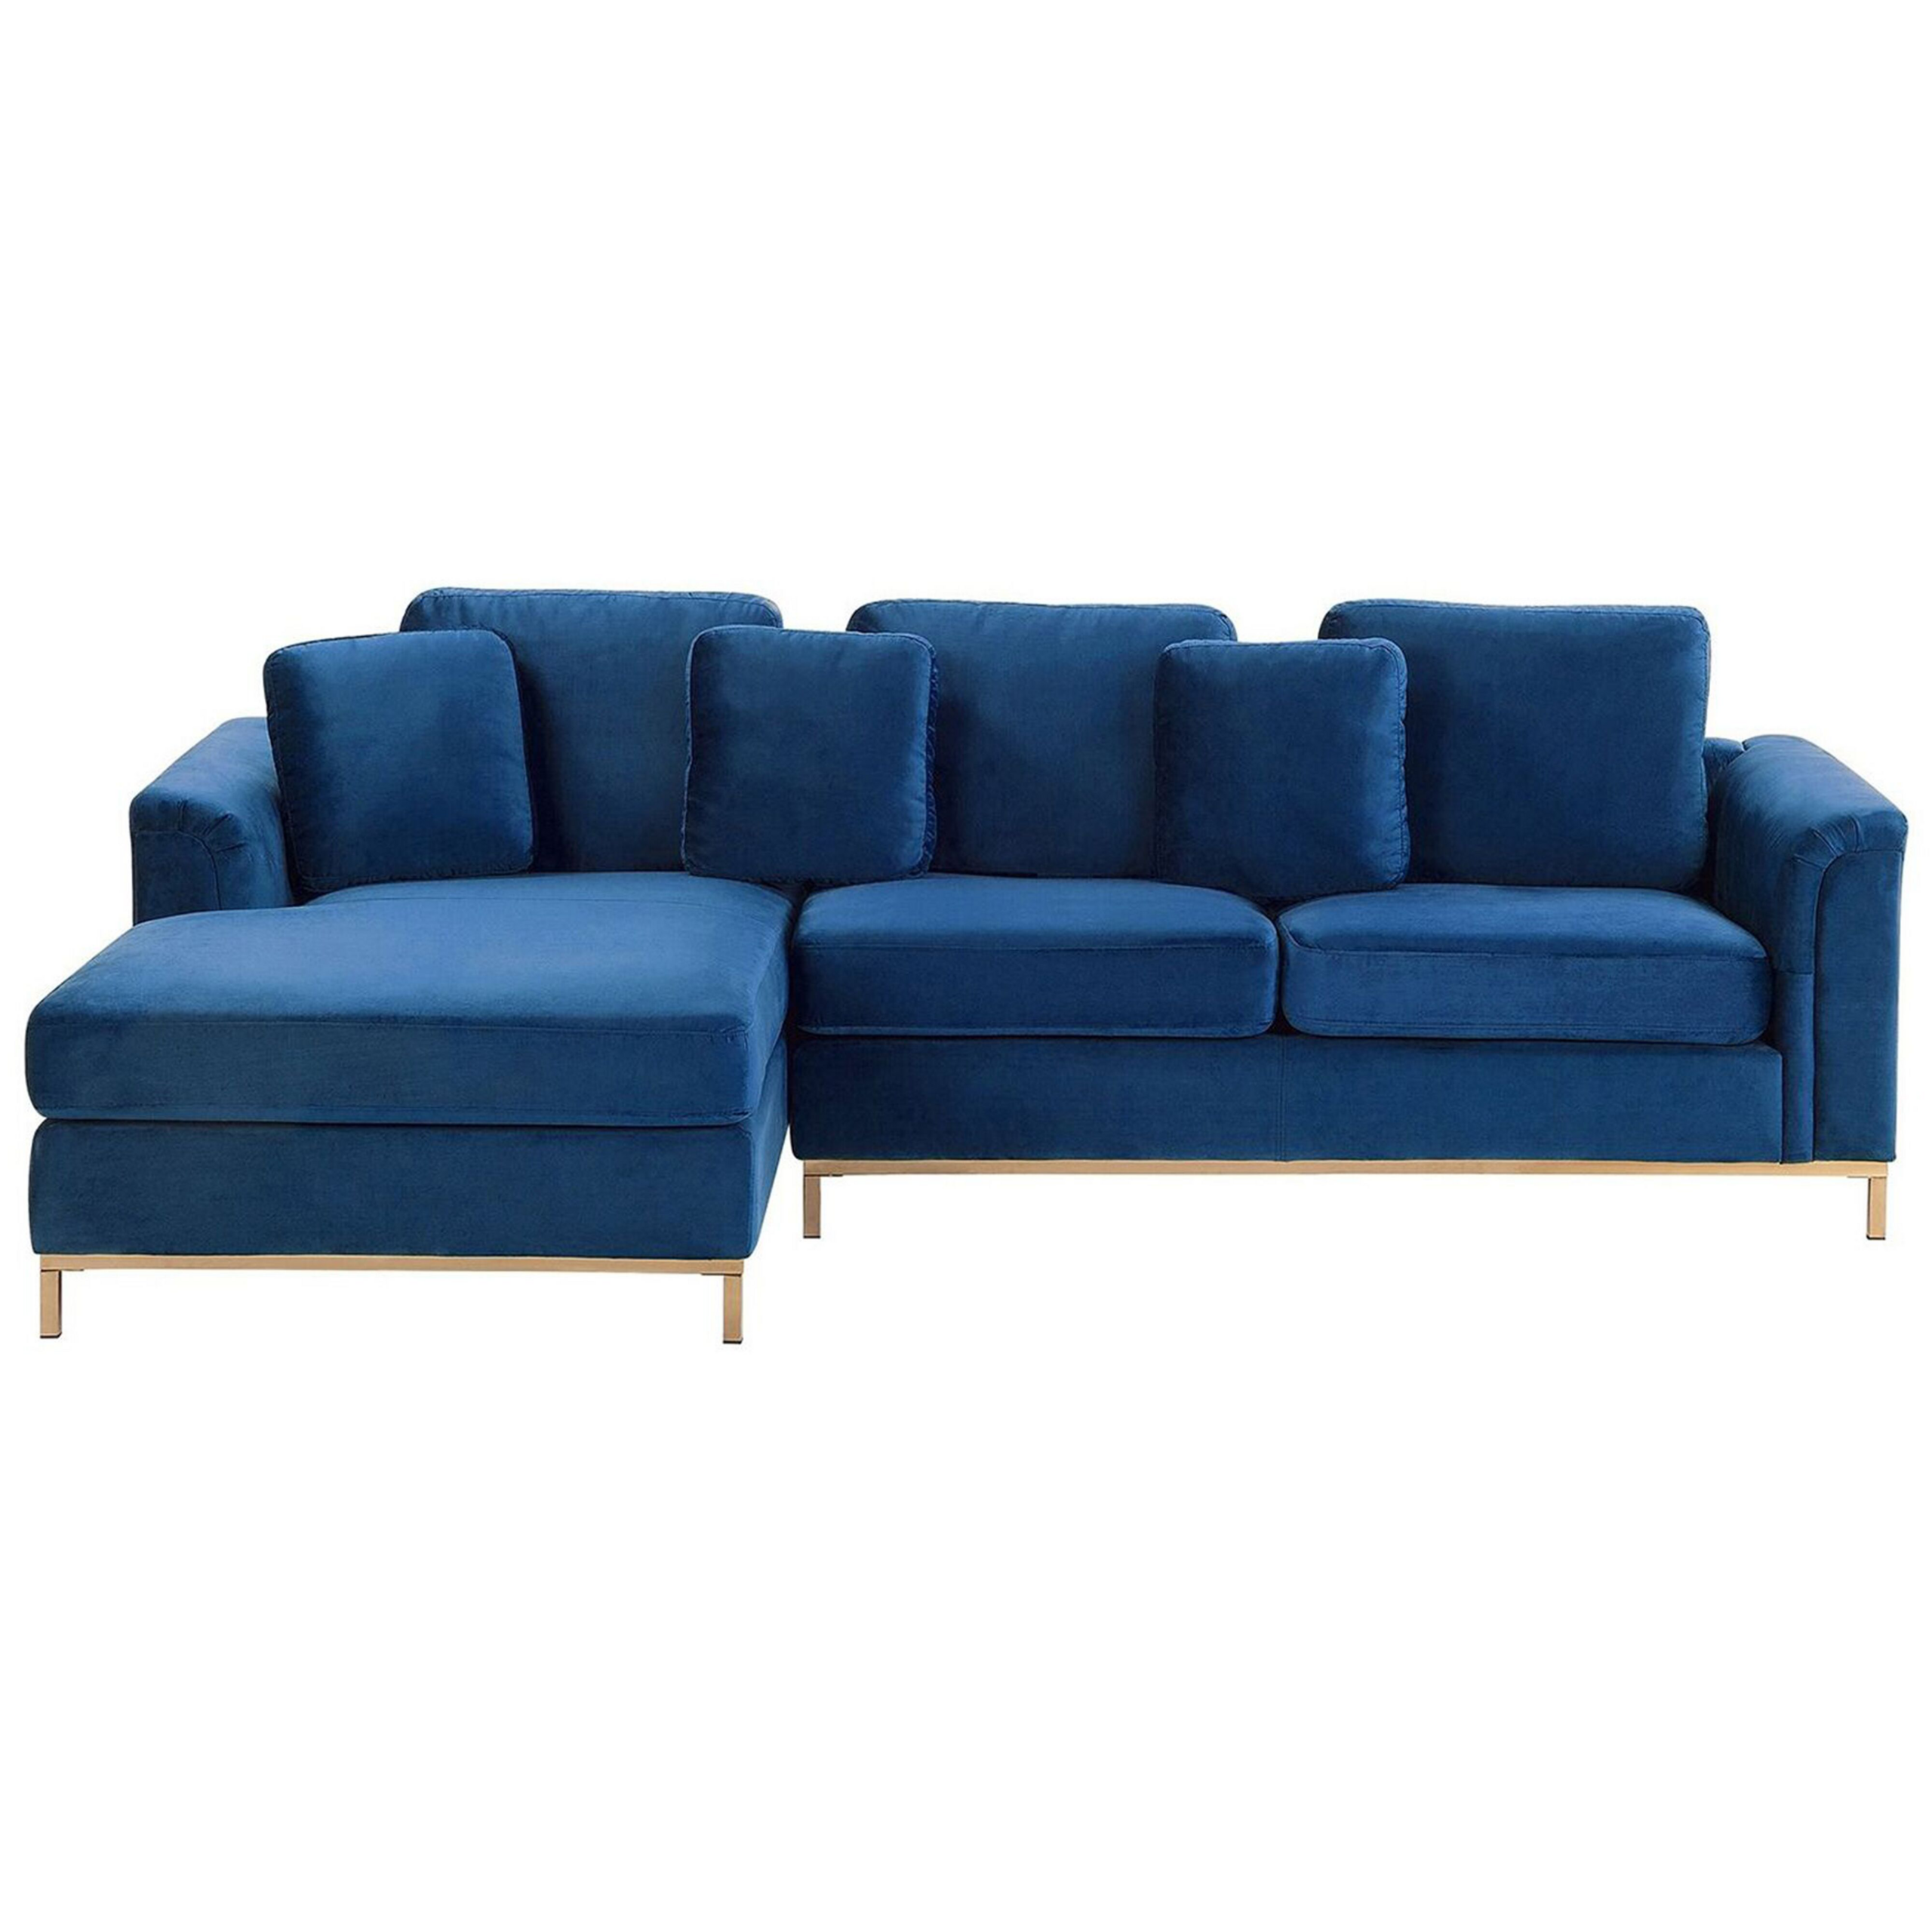 Beliani Corner Sofa Blue Velvet Upholstered L-shaped Right Hand Orientation